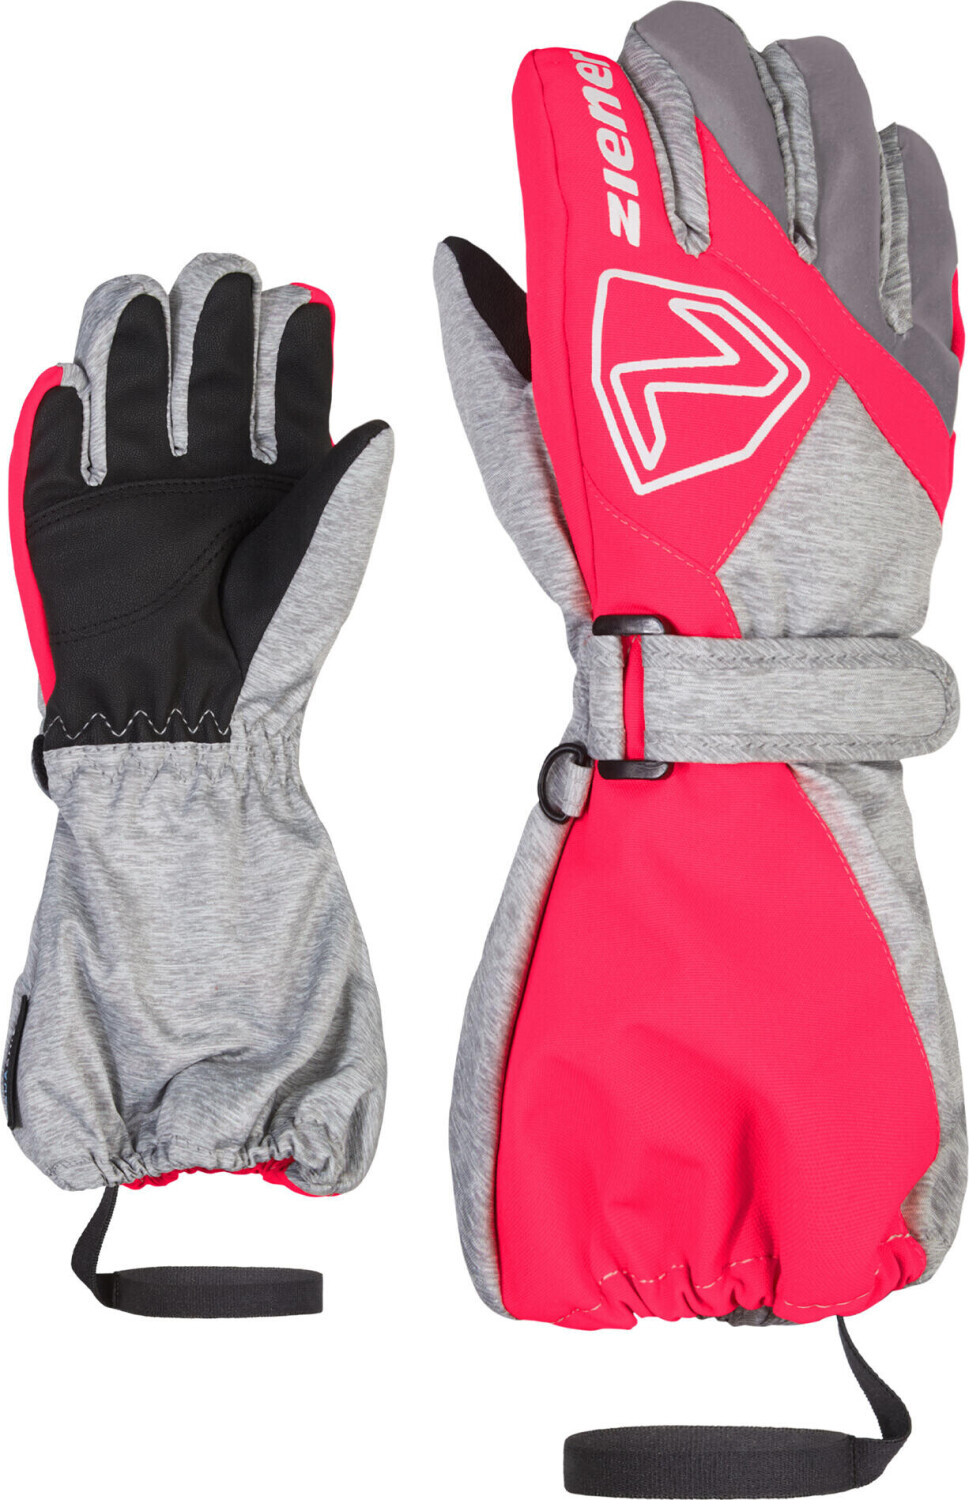 Ziener Lauro ASR Glove Junior light mélange.neon pink ab 29,90 € |  Preisvergleich bei